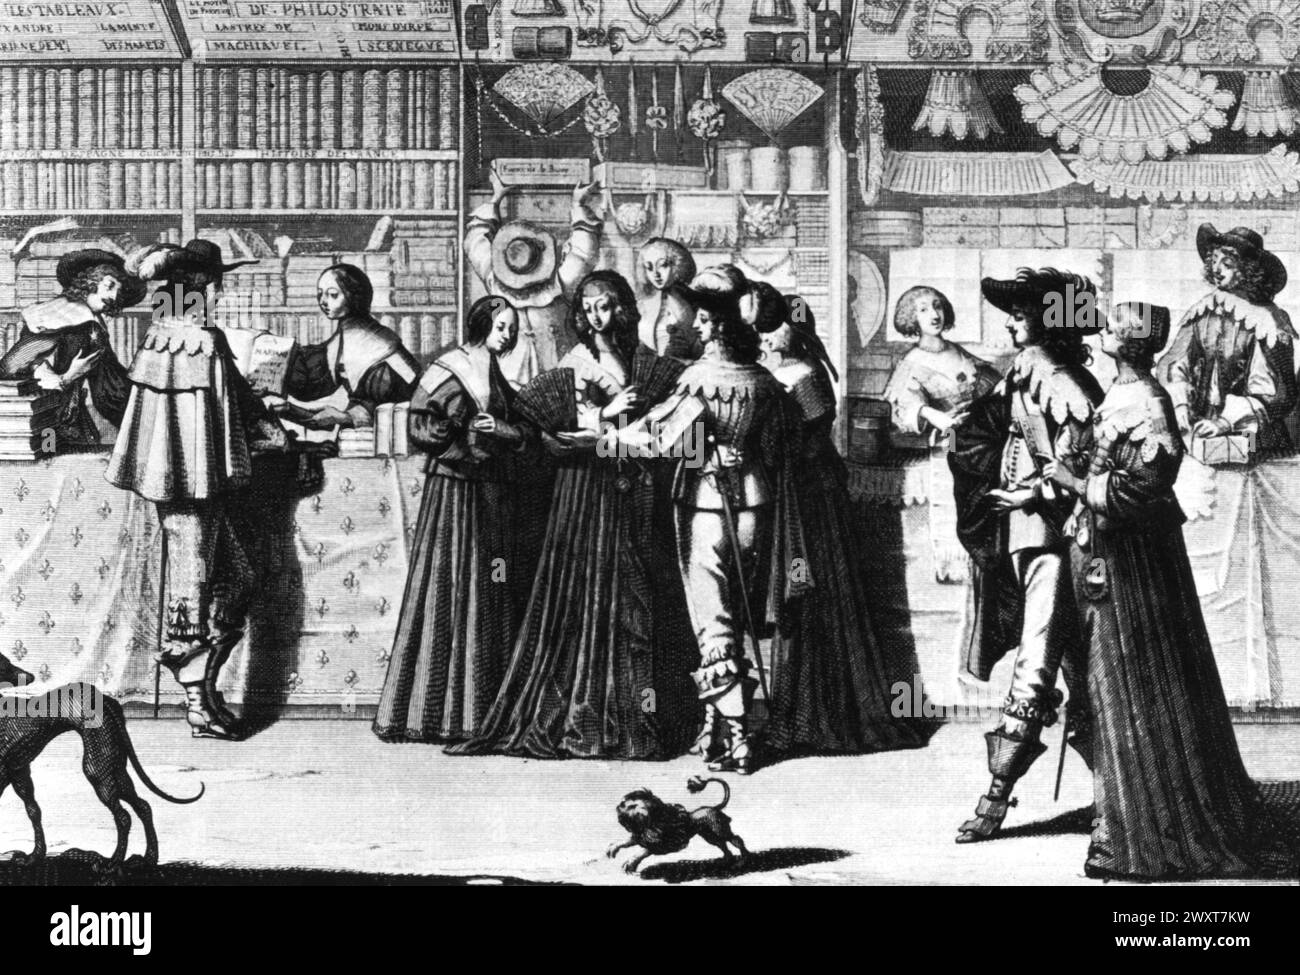 Negozi sotto i tribunali nel XVII secolo, Parigi, Francia, incisione di de Bosse Foto Stock